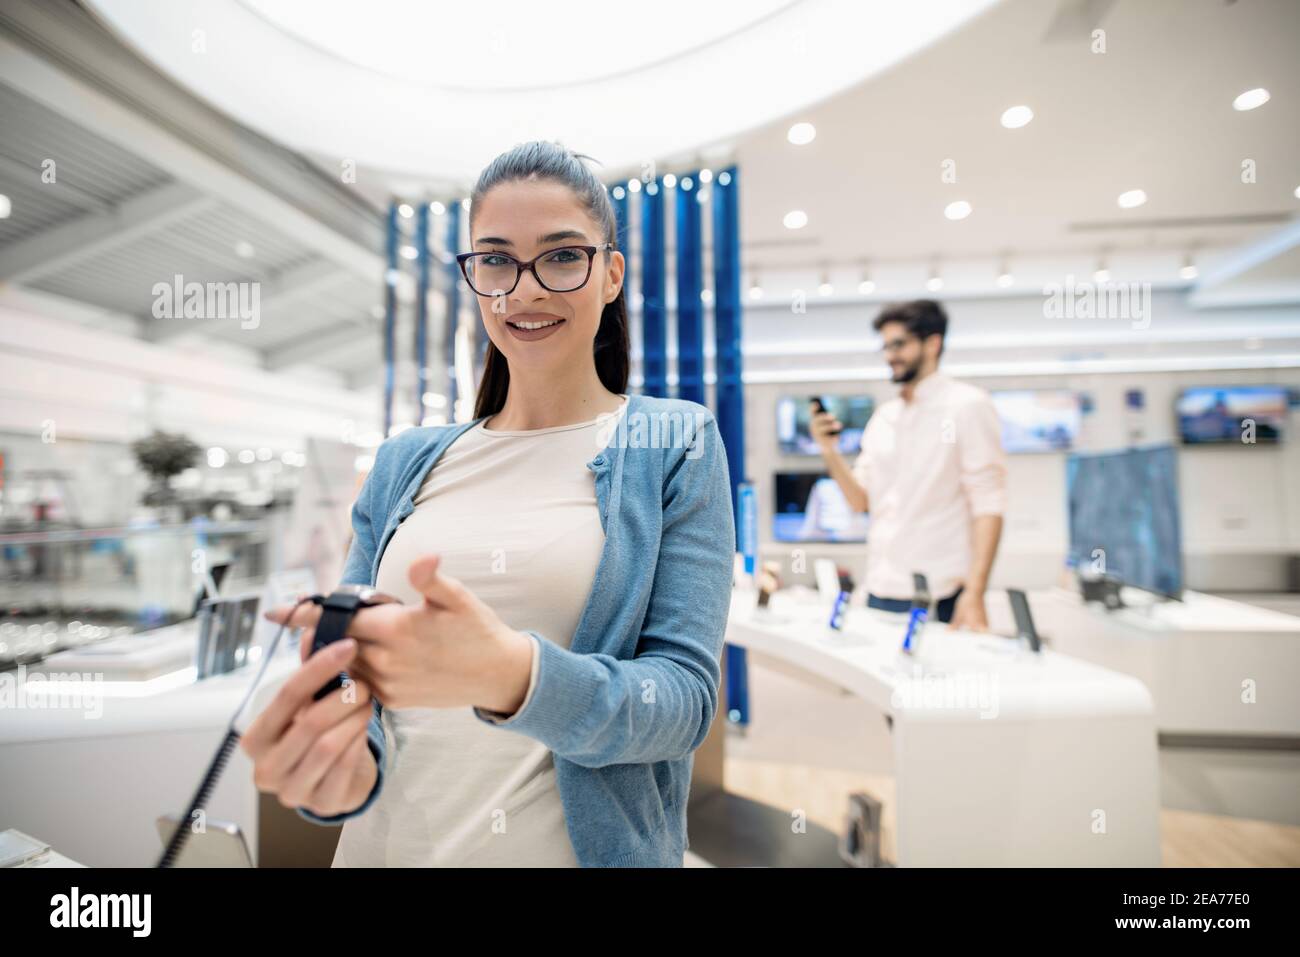 Donna che tiene in mano un orologio intelligente mentre si trova in un negozio di tecnologia e si guarda in macchina fotografica. Foto Stock